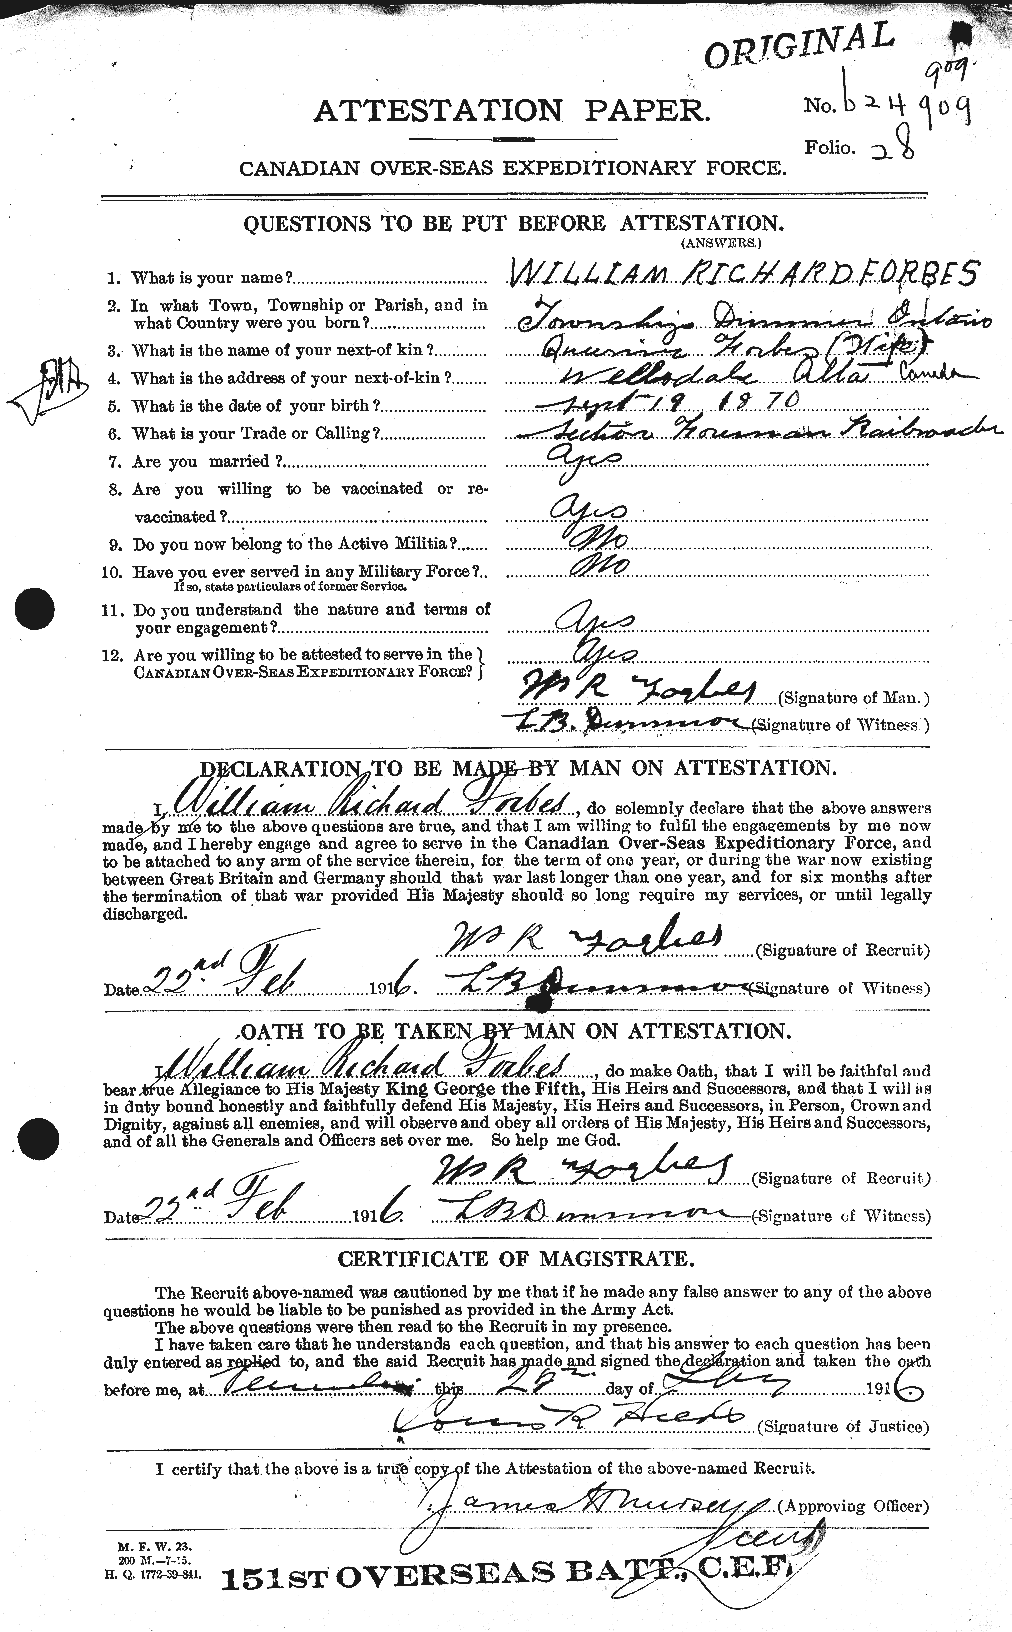 Dossiers du Personnel de la Première Guerre mondiale - CEC 331837a